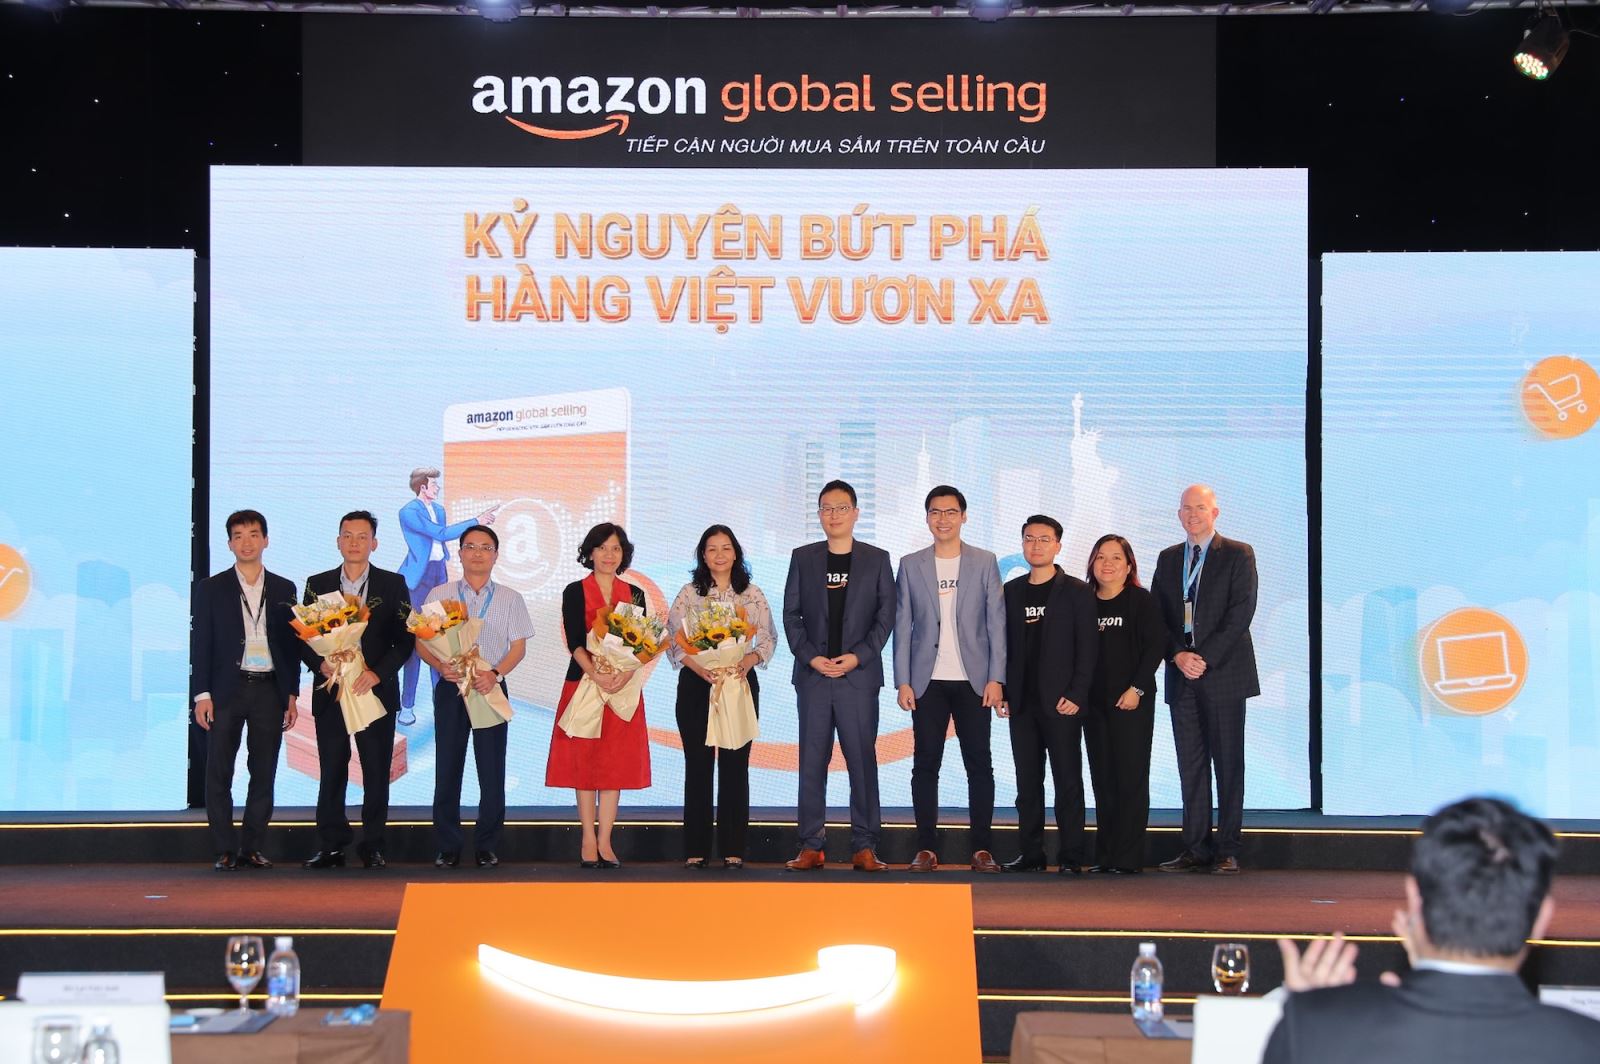 Tháng 4/2021, Amazon Global Selling chính thức công bố mở rộng hợp tác với Cục Thương mại điện tử và Kinh tế số (IDEA) - Bộ Công Thương và khởi xướng chương trình “Kỷ Nguyên Bứt Phá, Hàng Việt Vươn Xa” nhằm tăng cường hỗ trợ người bán hàng Việt Nam, chung tay giúp đỡ doanh nghiệp Việt phát triển với thương mại điện tử xuyên biên giới